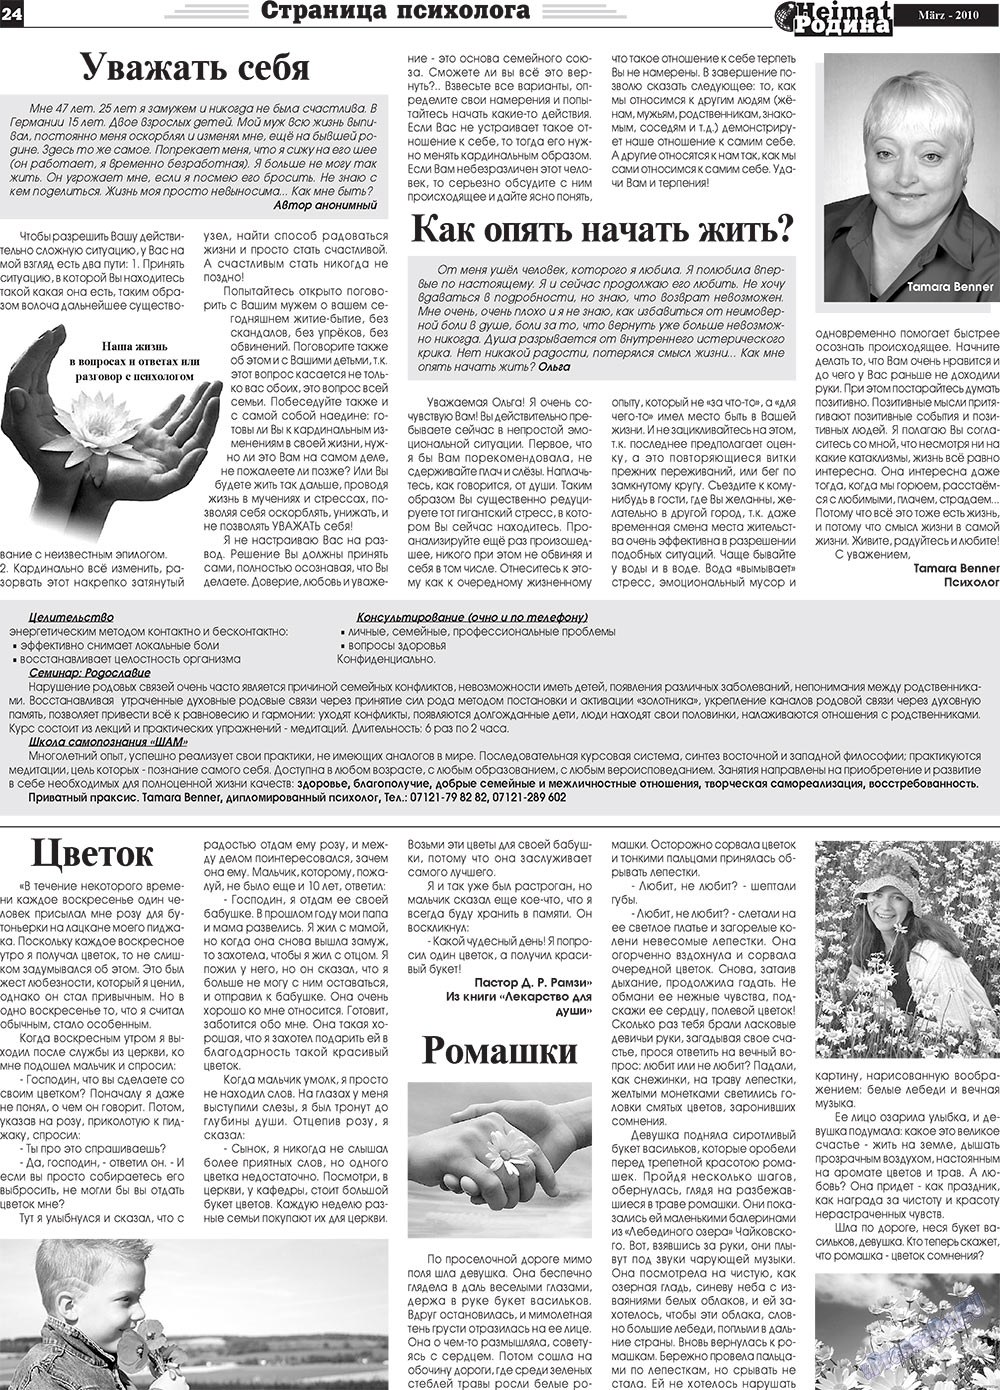 Heimat-Родина (газета). 2010 год, номер 3, стр. 24